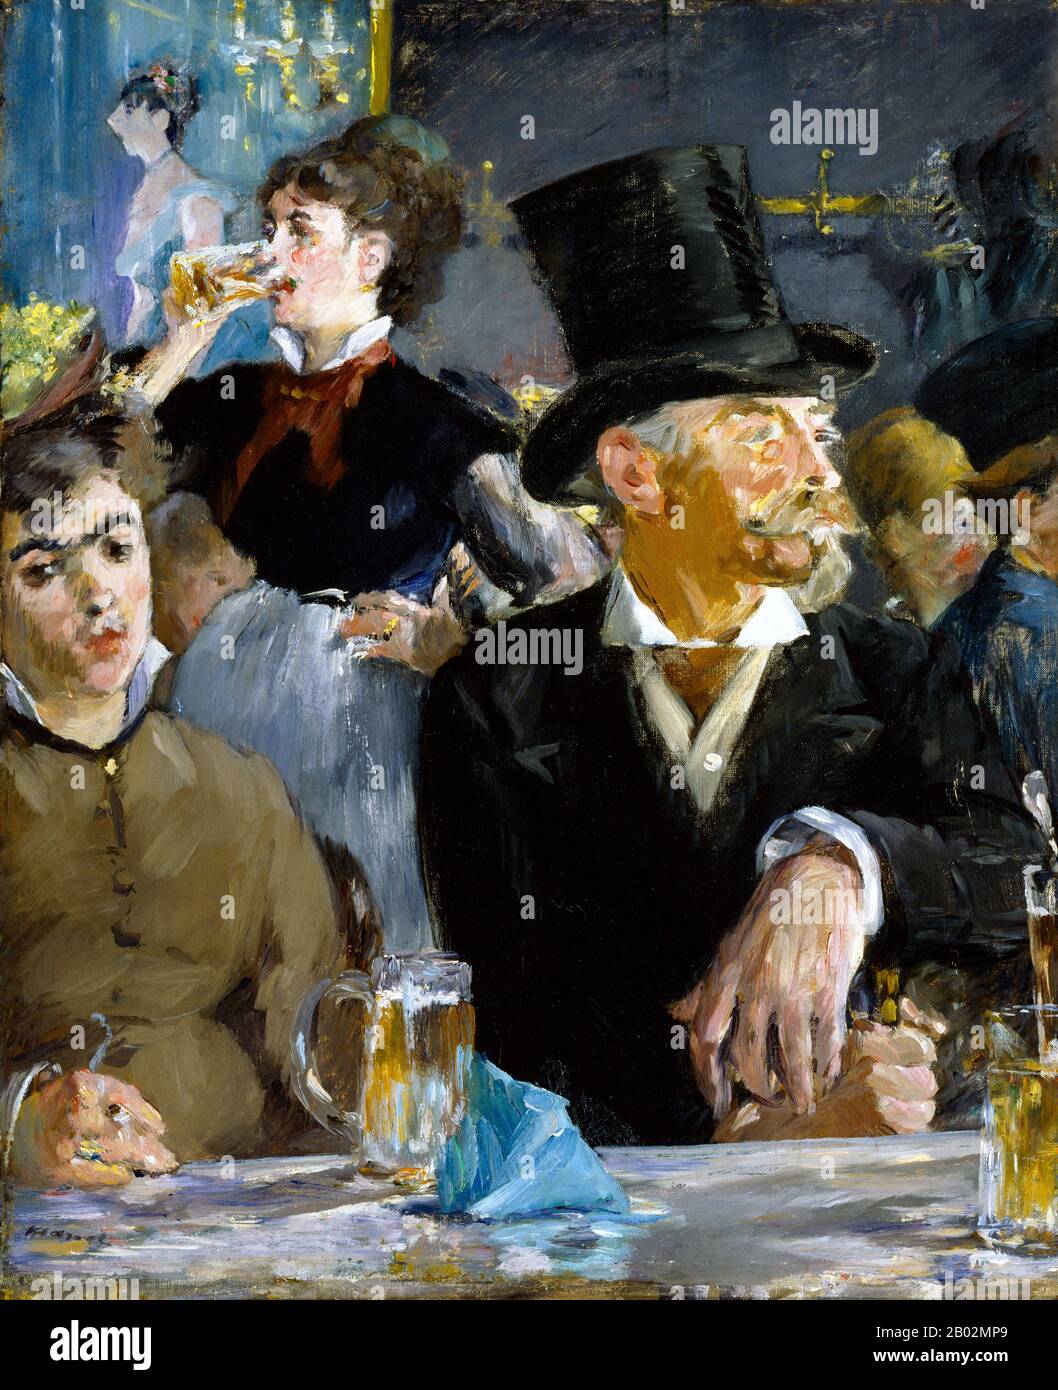 El pintor impresionista, Édouard Manet, a menudo capturó escenas de café  que representaban la vida social a finales del siglo XIX, como se describe  en esta pintura, el Café-Concert. El escenario ha